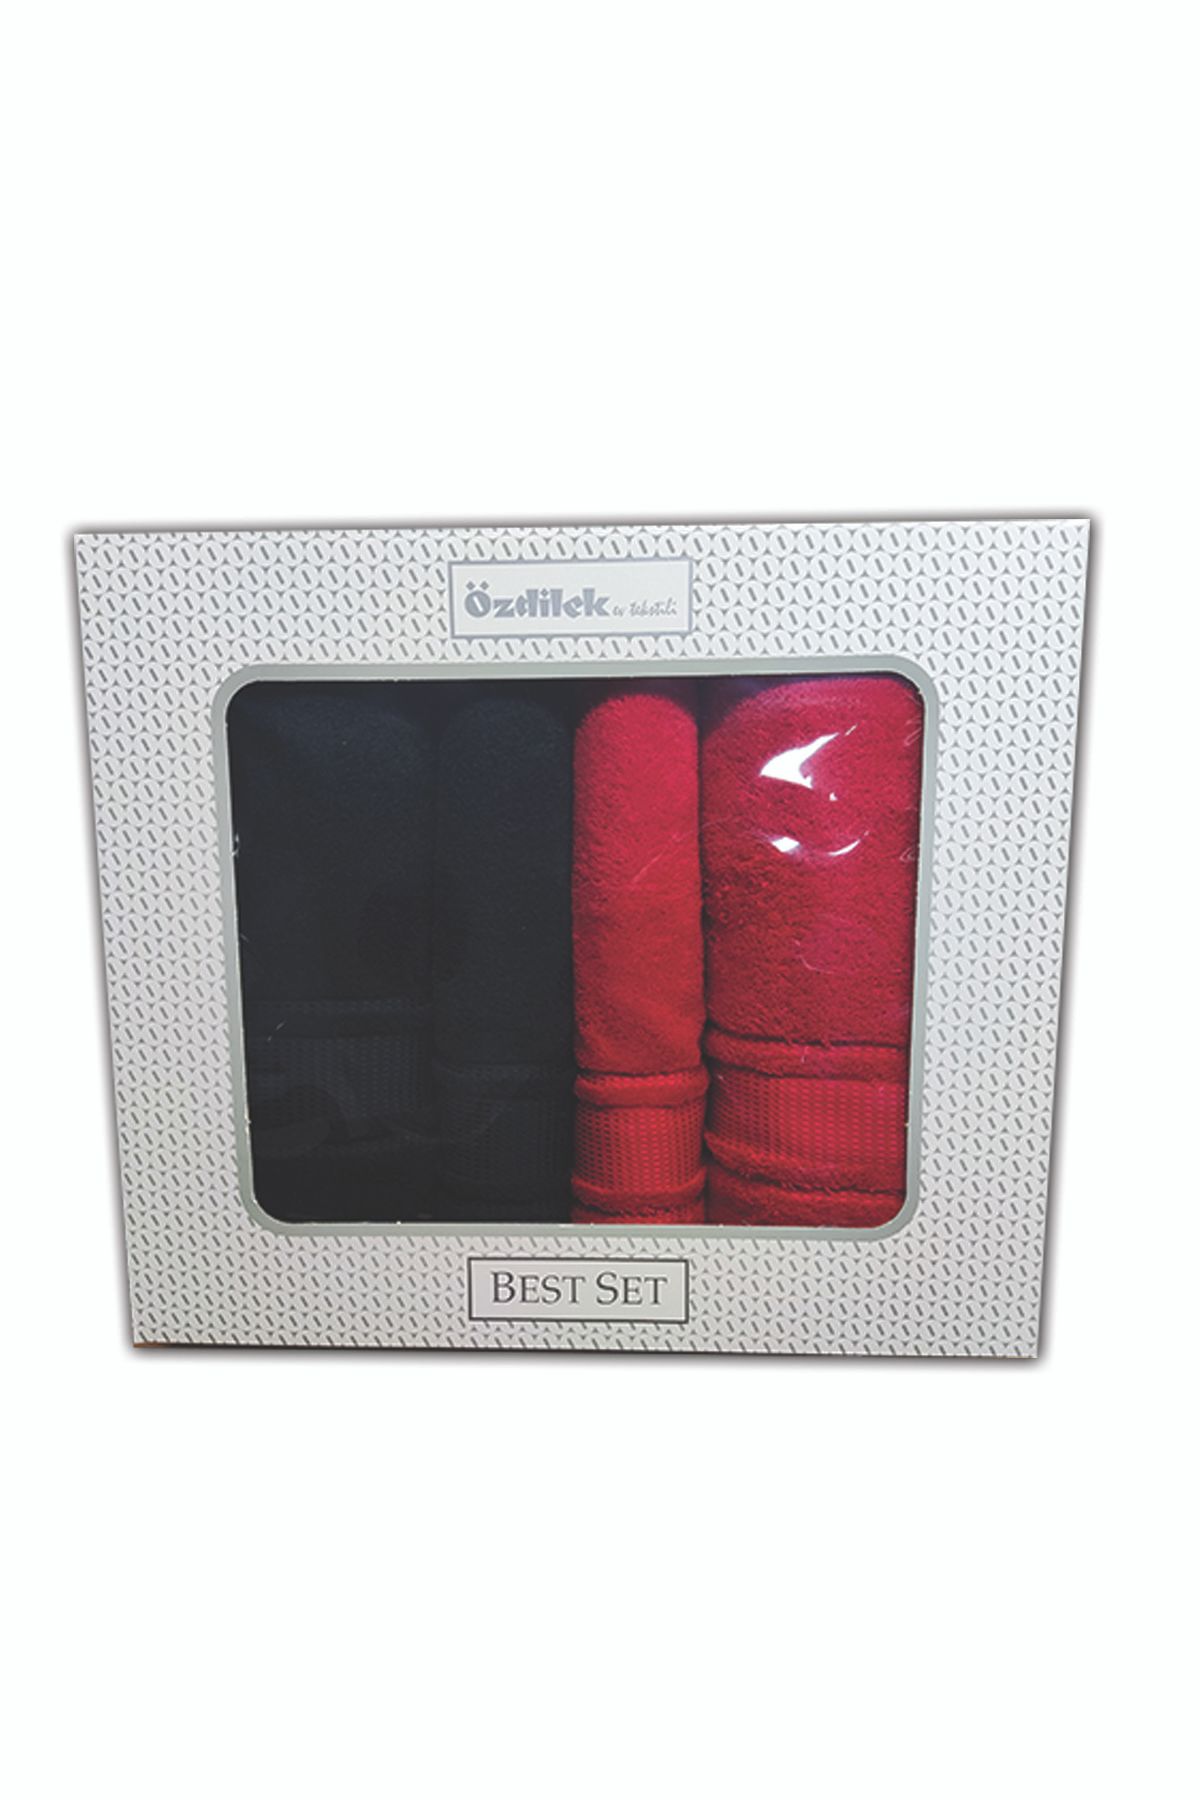 Özdilek Colourist Best Set Hamam Takımı Siyah Kırmızı